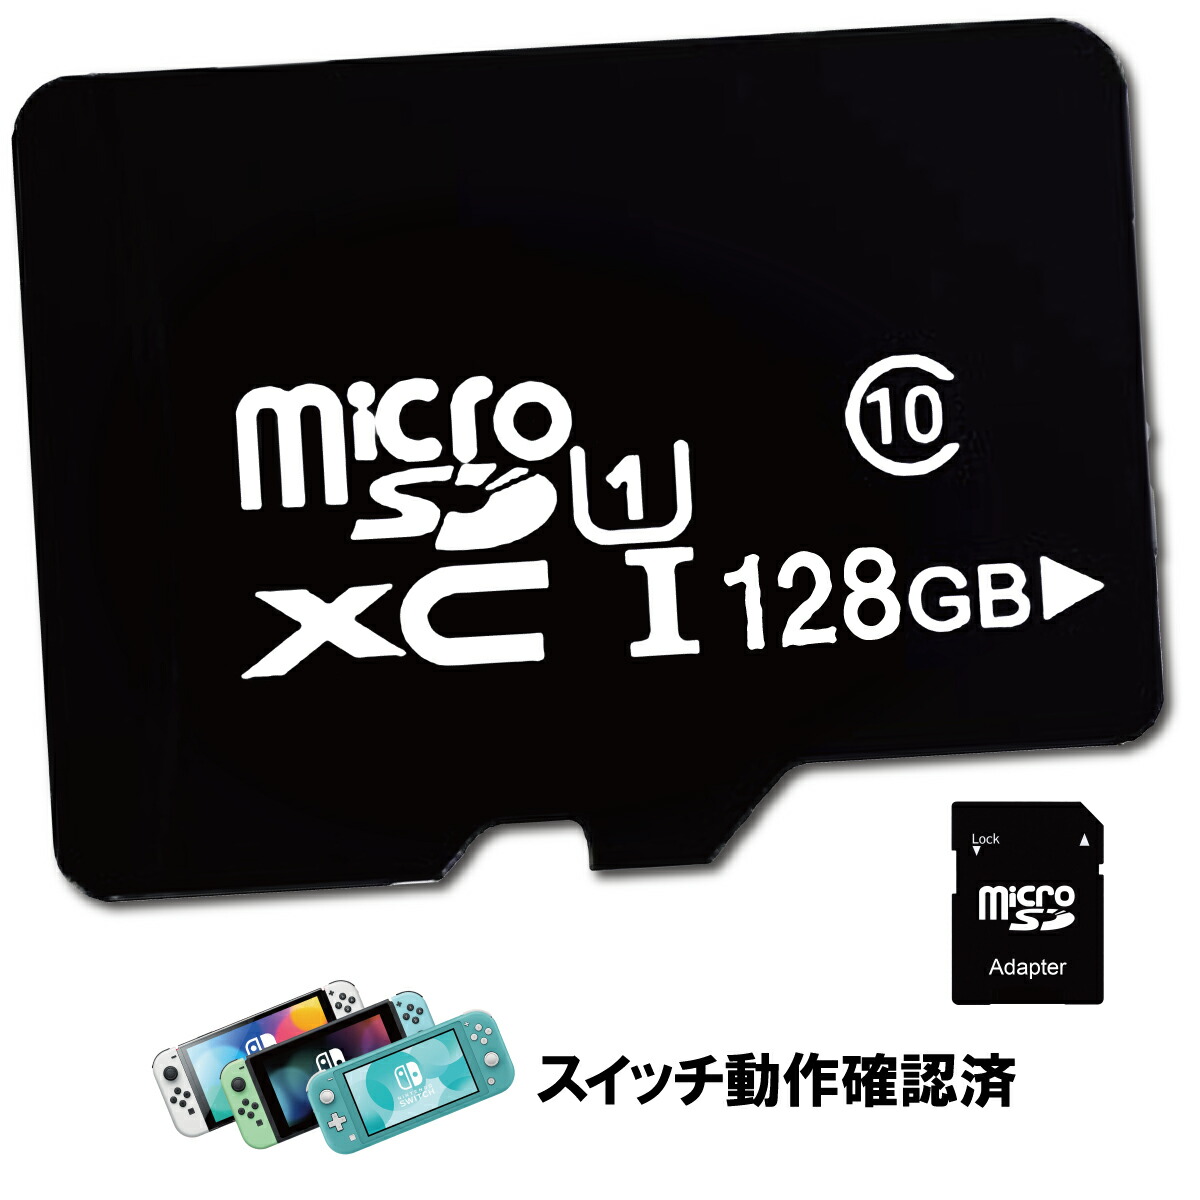 ニンテンドースイッチ SDカード microSD カード 128GB 容量 スマホ 携帯電話 マイクロ ポイント消化 おすすめ SD メモリーカード  メモリー 記録 増設 フォーマット スロット SDXCカード マイクロsdカード | シェア買いならシェアモル（旧ショッピン）